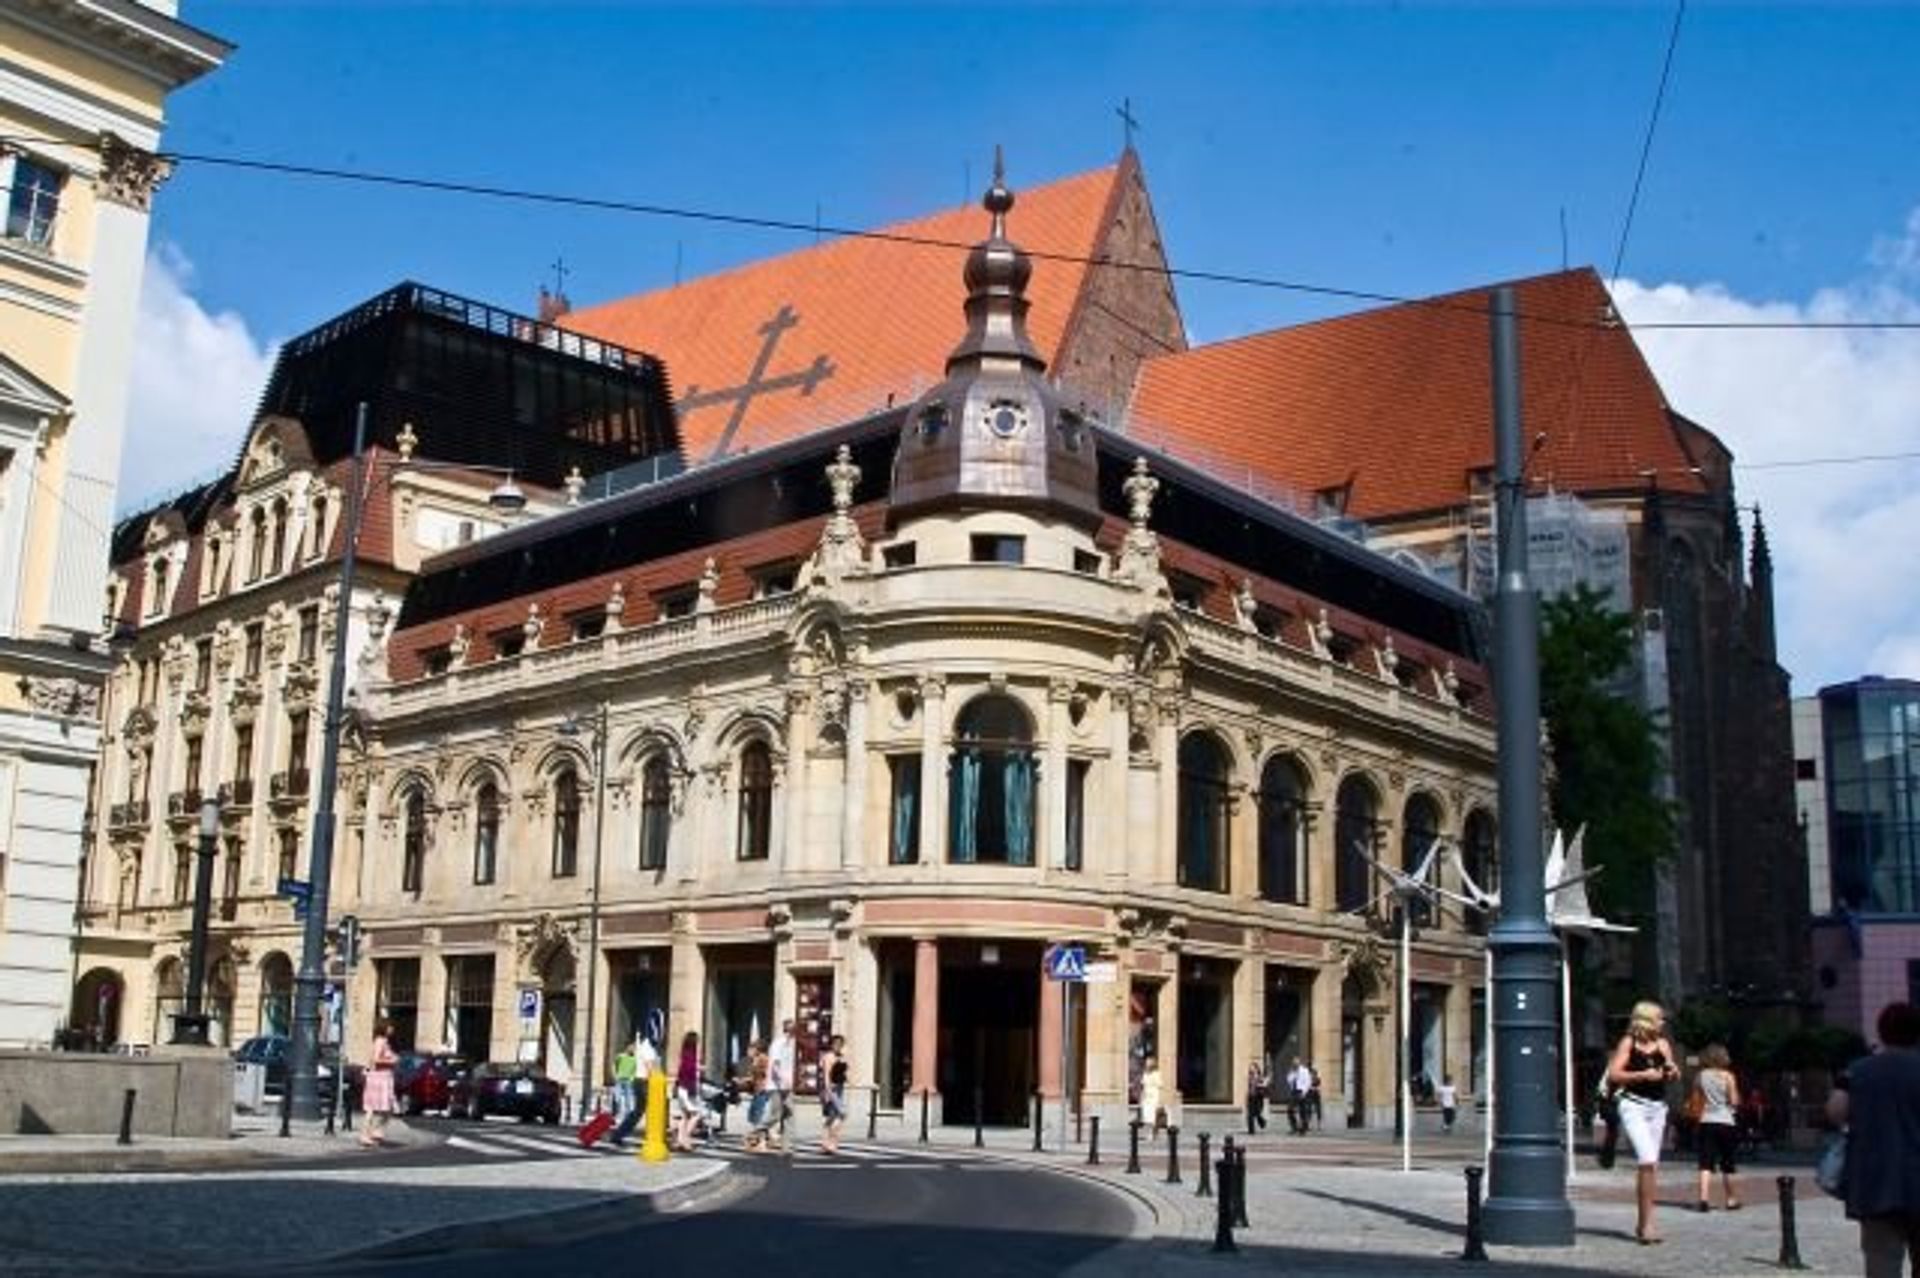  Euro-raport: Co czeka Czechów w hotelu Monopol